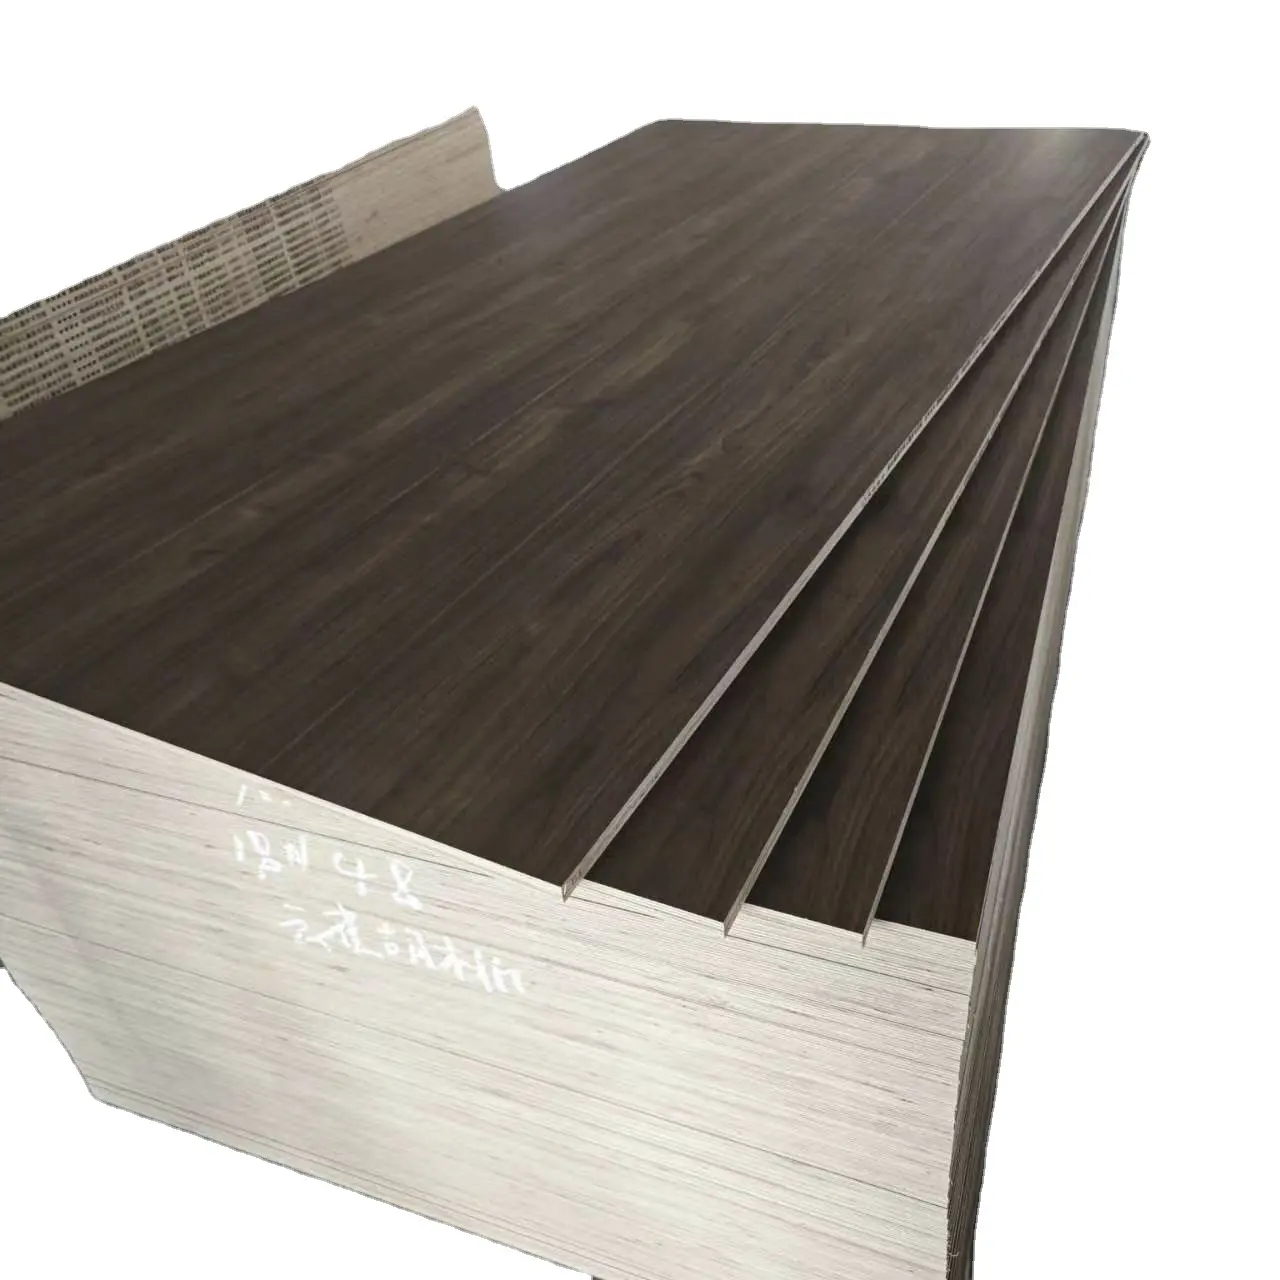 Tablero de muebles barato de alta calidad, tablero de partículas de aglomerado de melamina duradero de 1220mm * 2440mm para paneles de pared Shiplap